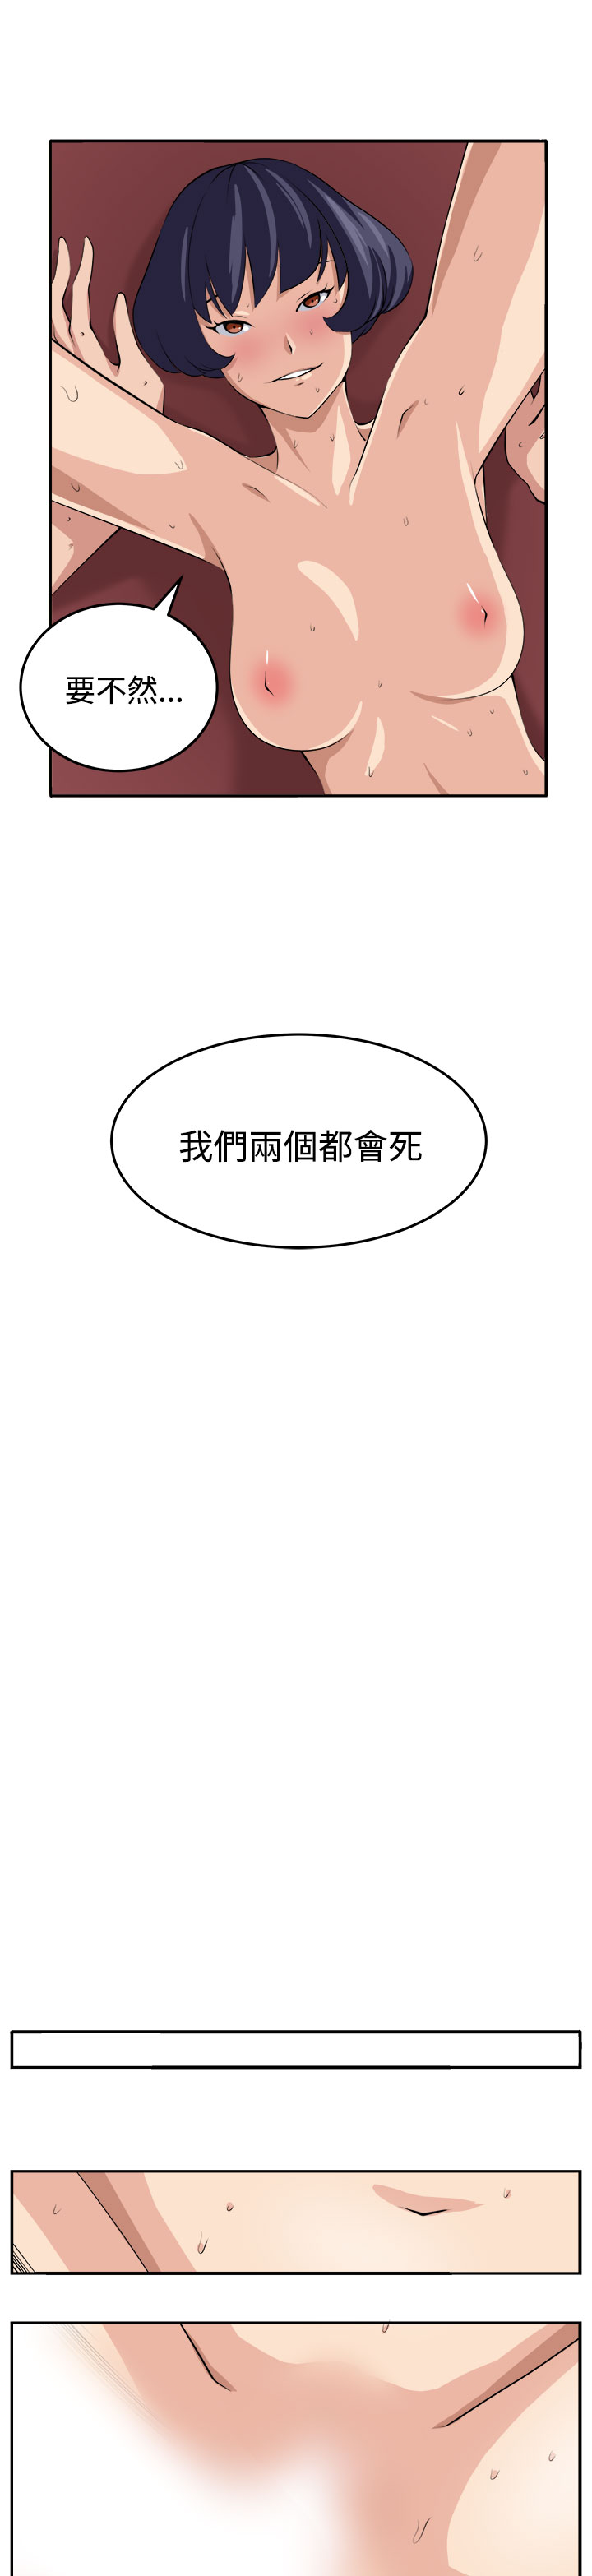 trap 圈套 Ch.14~21 [Chinese]中文 [嘮叨雞 &異形] 圈套